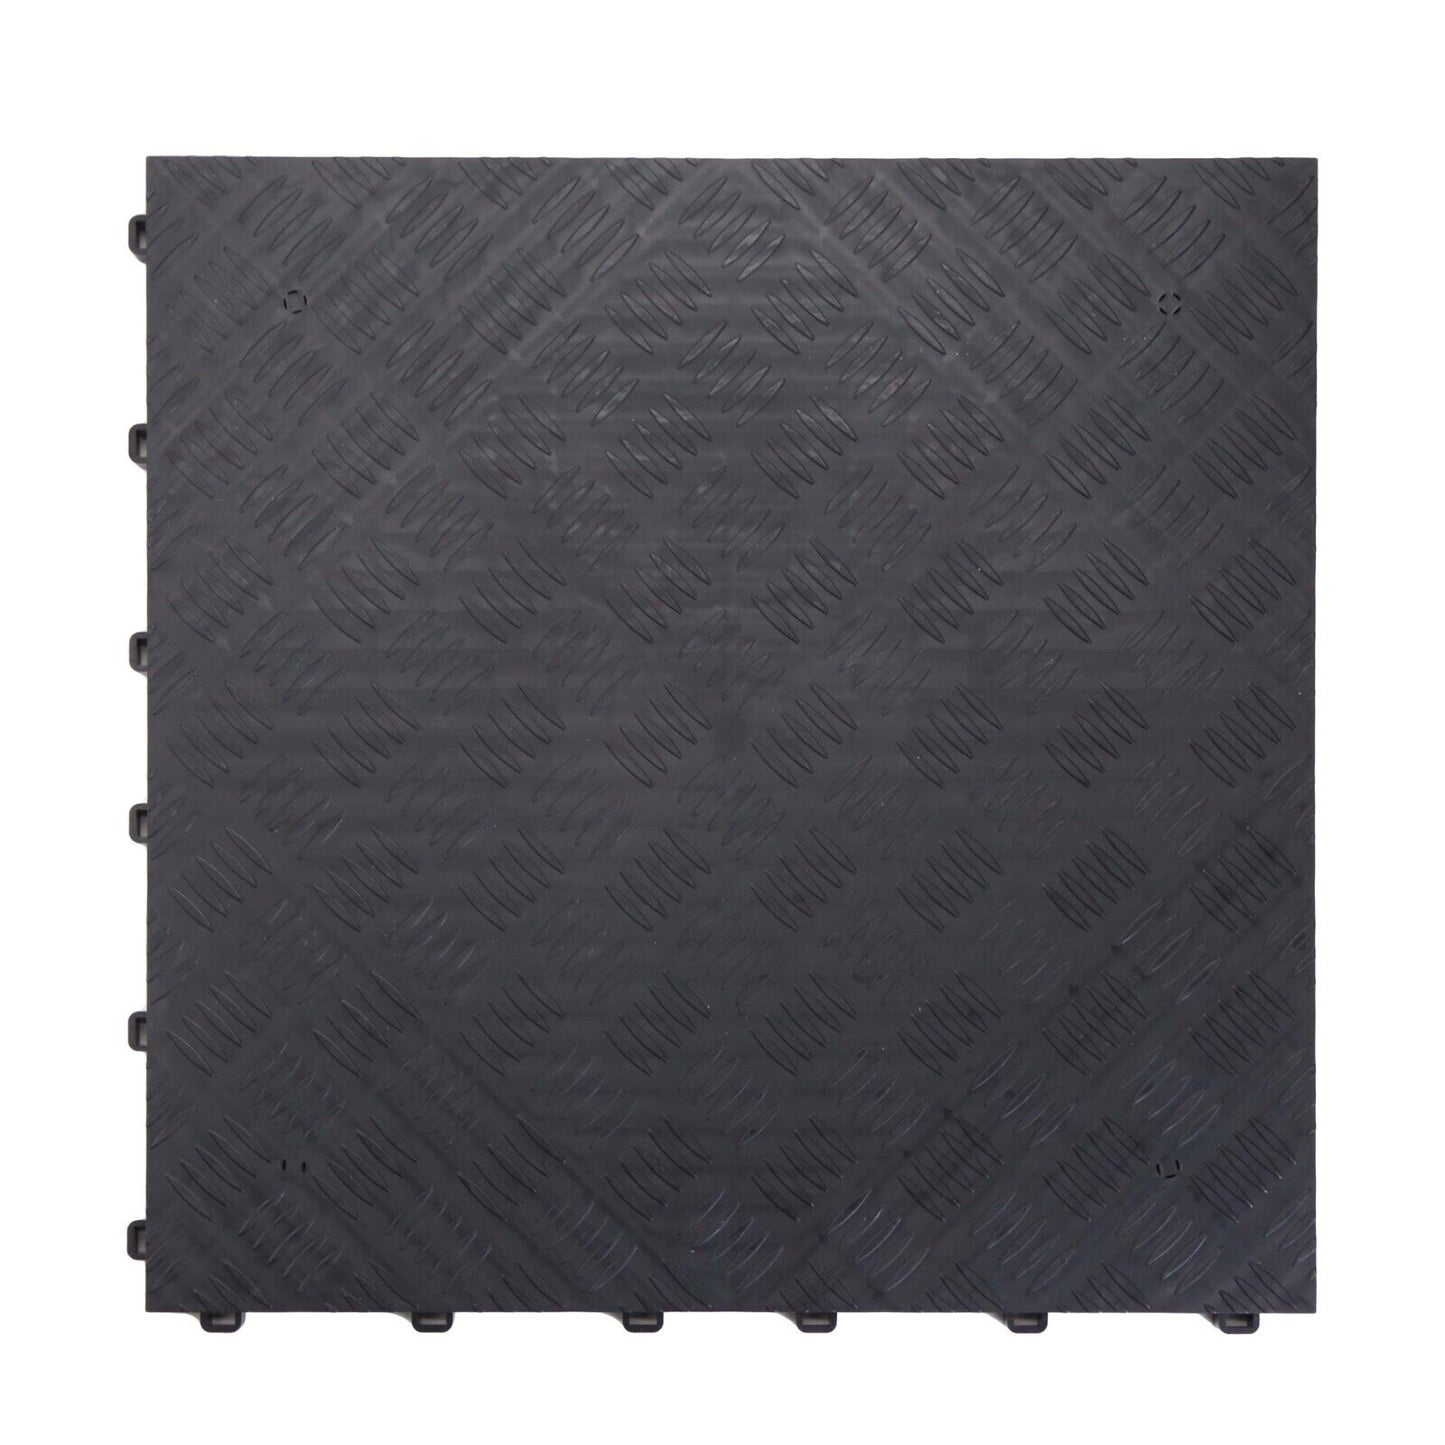 Modular Interlocking Solid Garage Flooring Tiles - Black